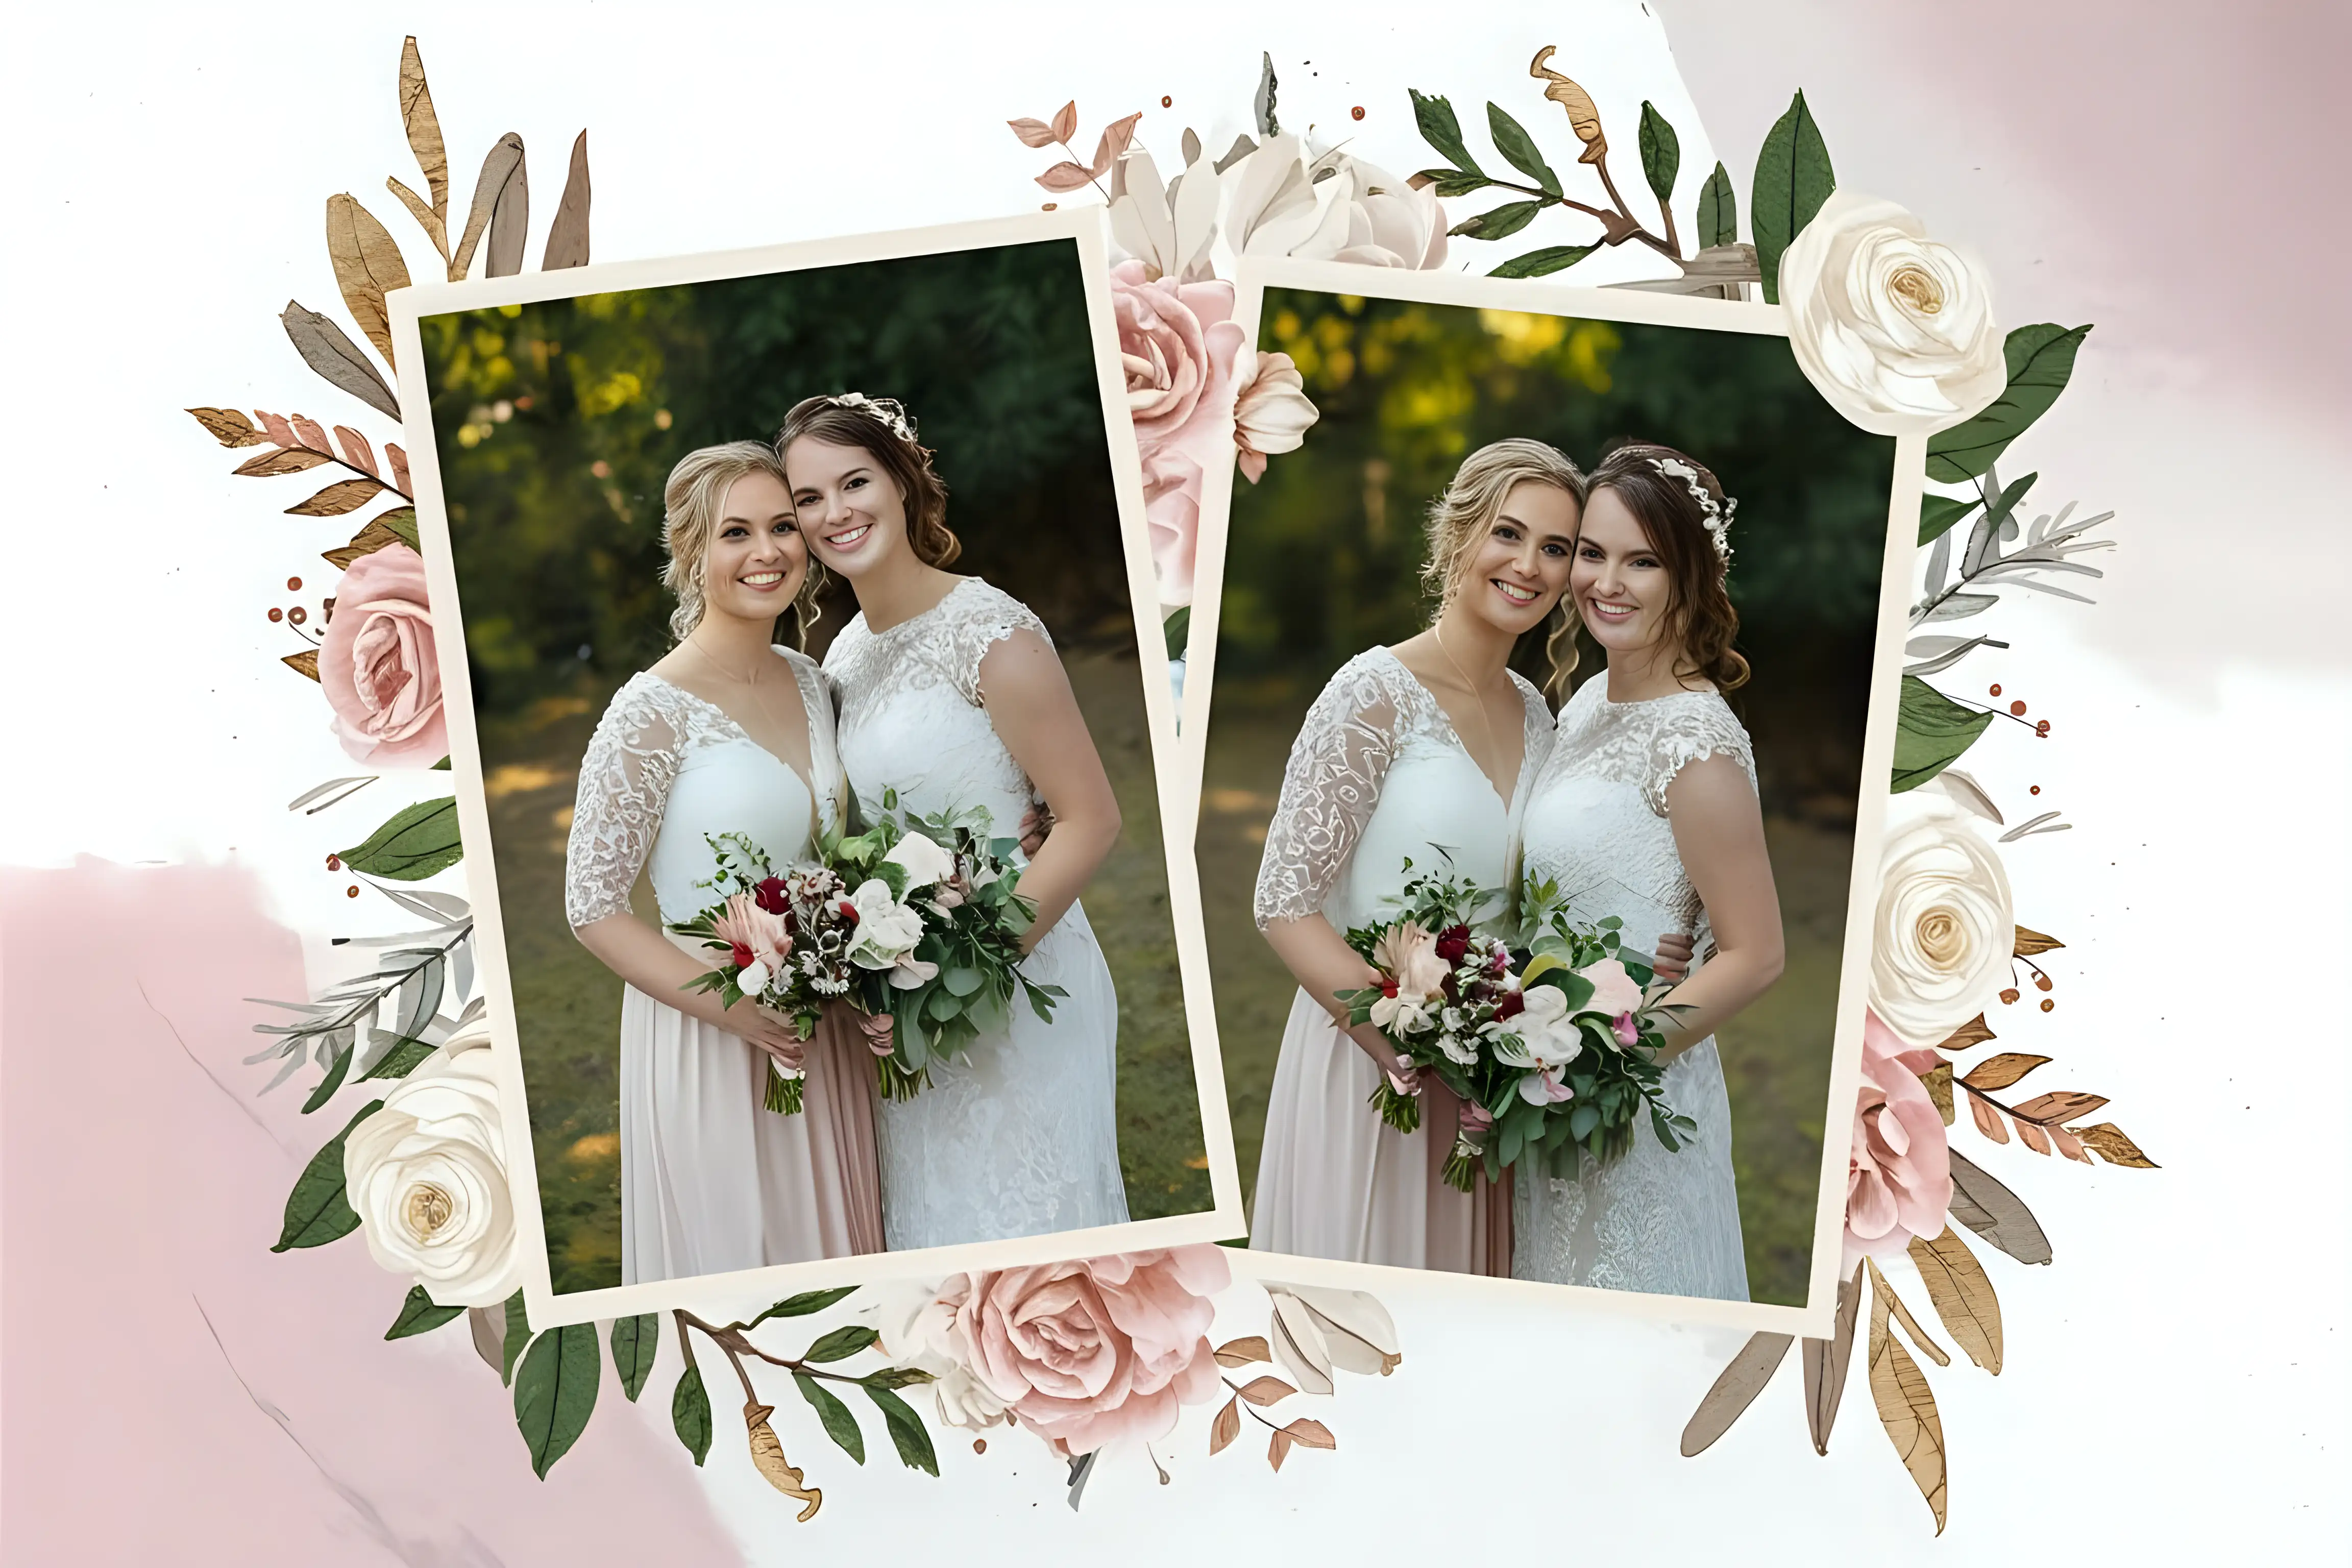 Elegant Wedding Memories Collage Floral Borders Romantic Tones